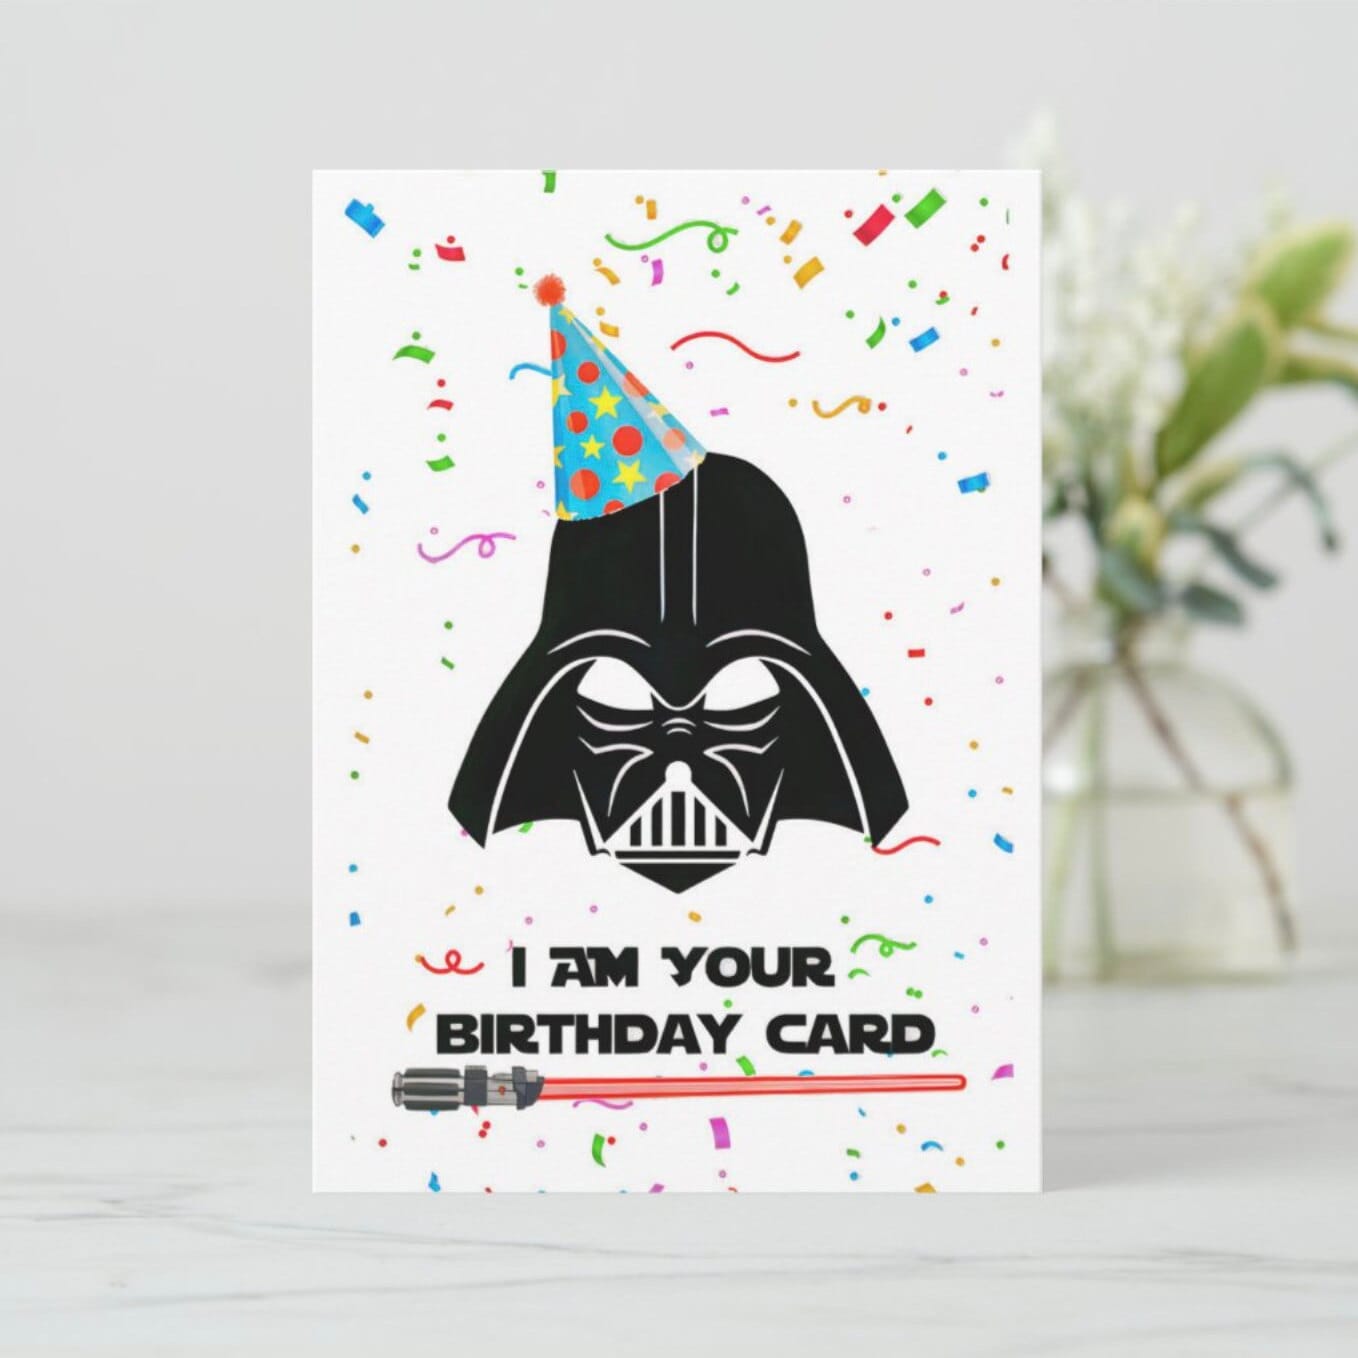 Star Wars Darth Vader Birthday Card 11 X 8.5 - Etsy